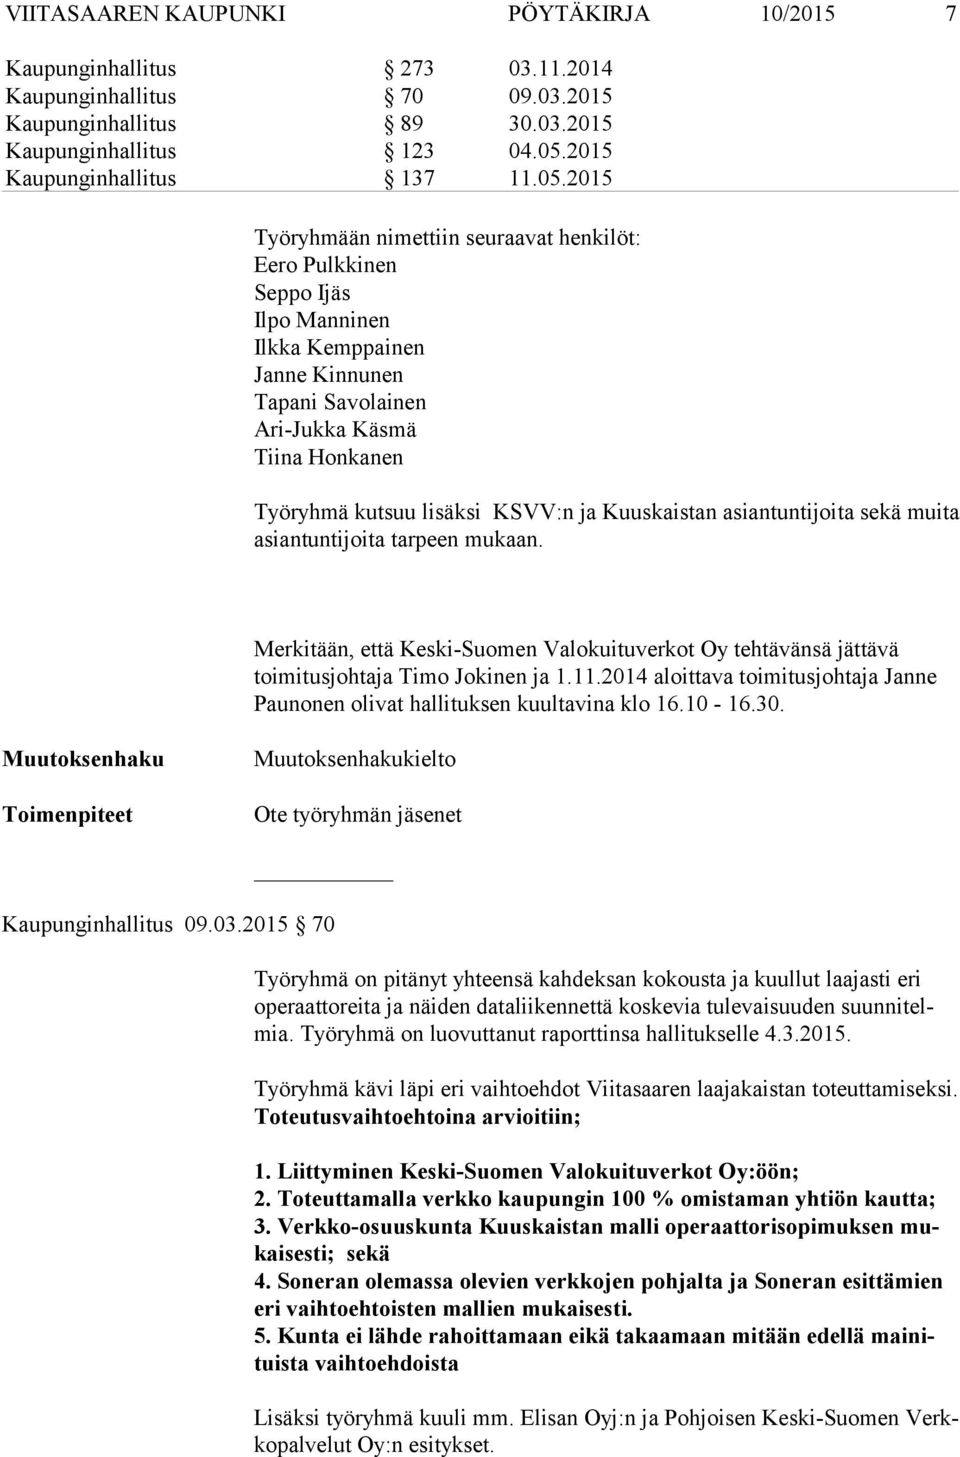 Merkitään, että Keski-Suomen Valokuituverkot Oy tehtävänsä jättävä toimitusjohtaja Timo Jokinen ja 1.11.2014 aloittava toimitusjohtaja Janne Paunonen olivat hallituksen kuultavina klo 16.10-16.30.